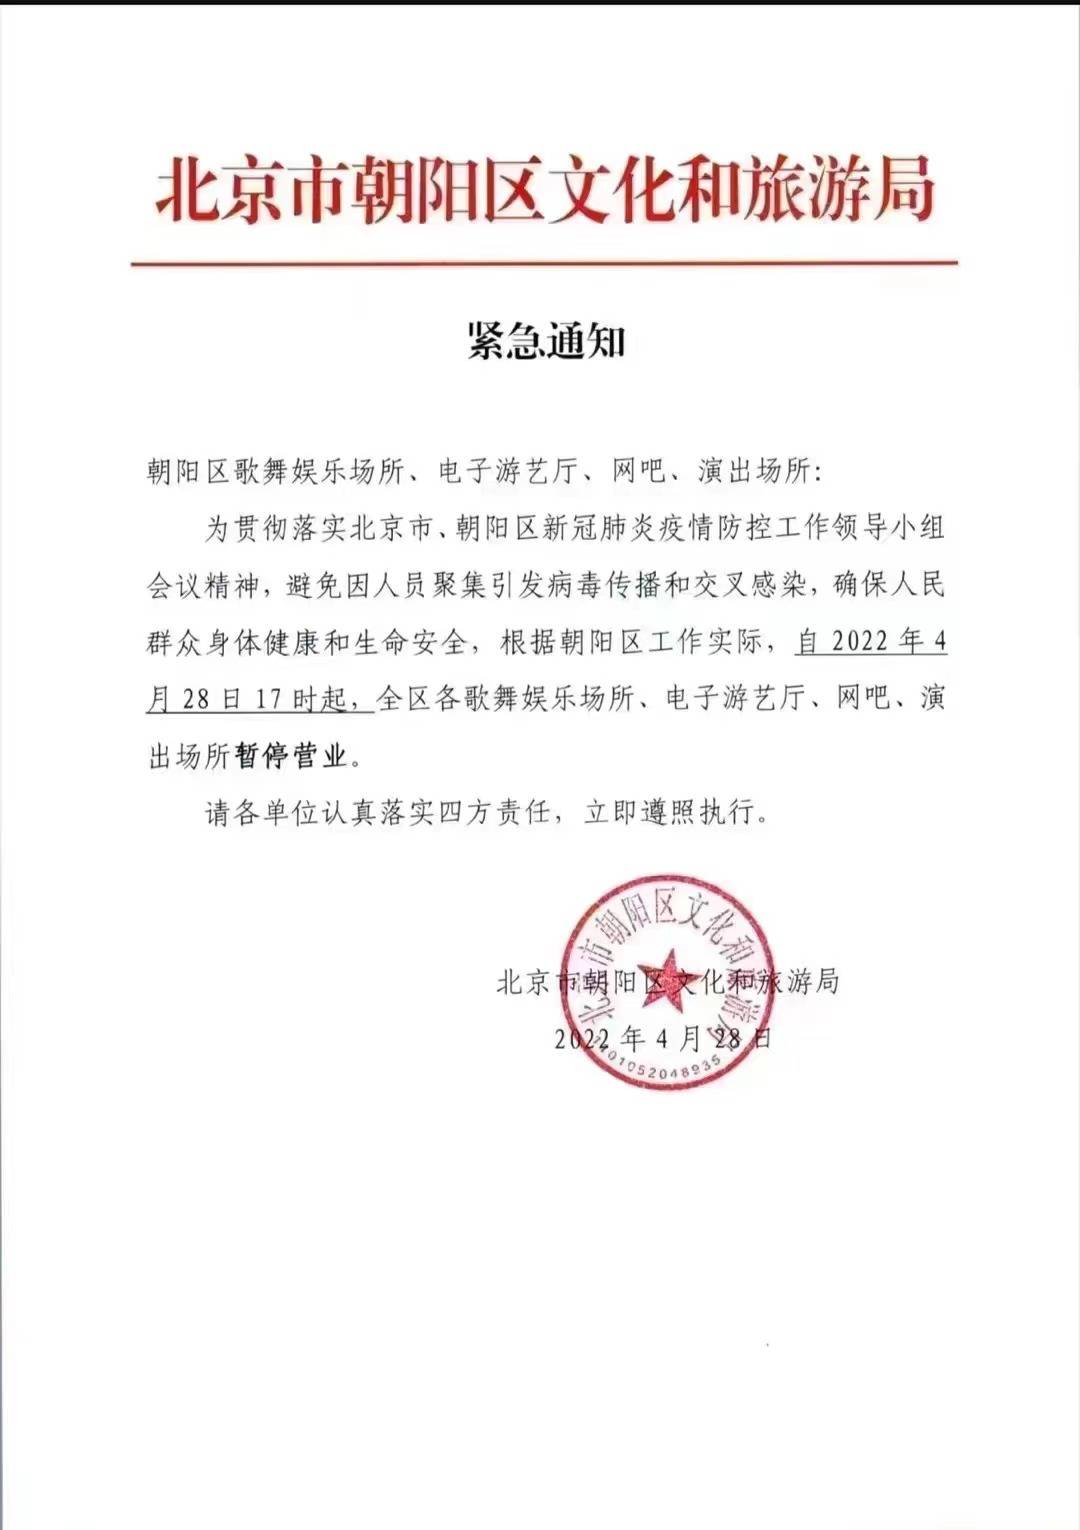 北京市朝阳区文化和旅游局发布通知：歌舞娱乐场所、演出场所等暂停营业 